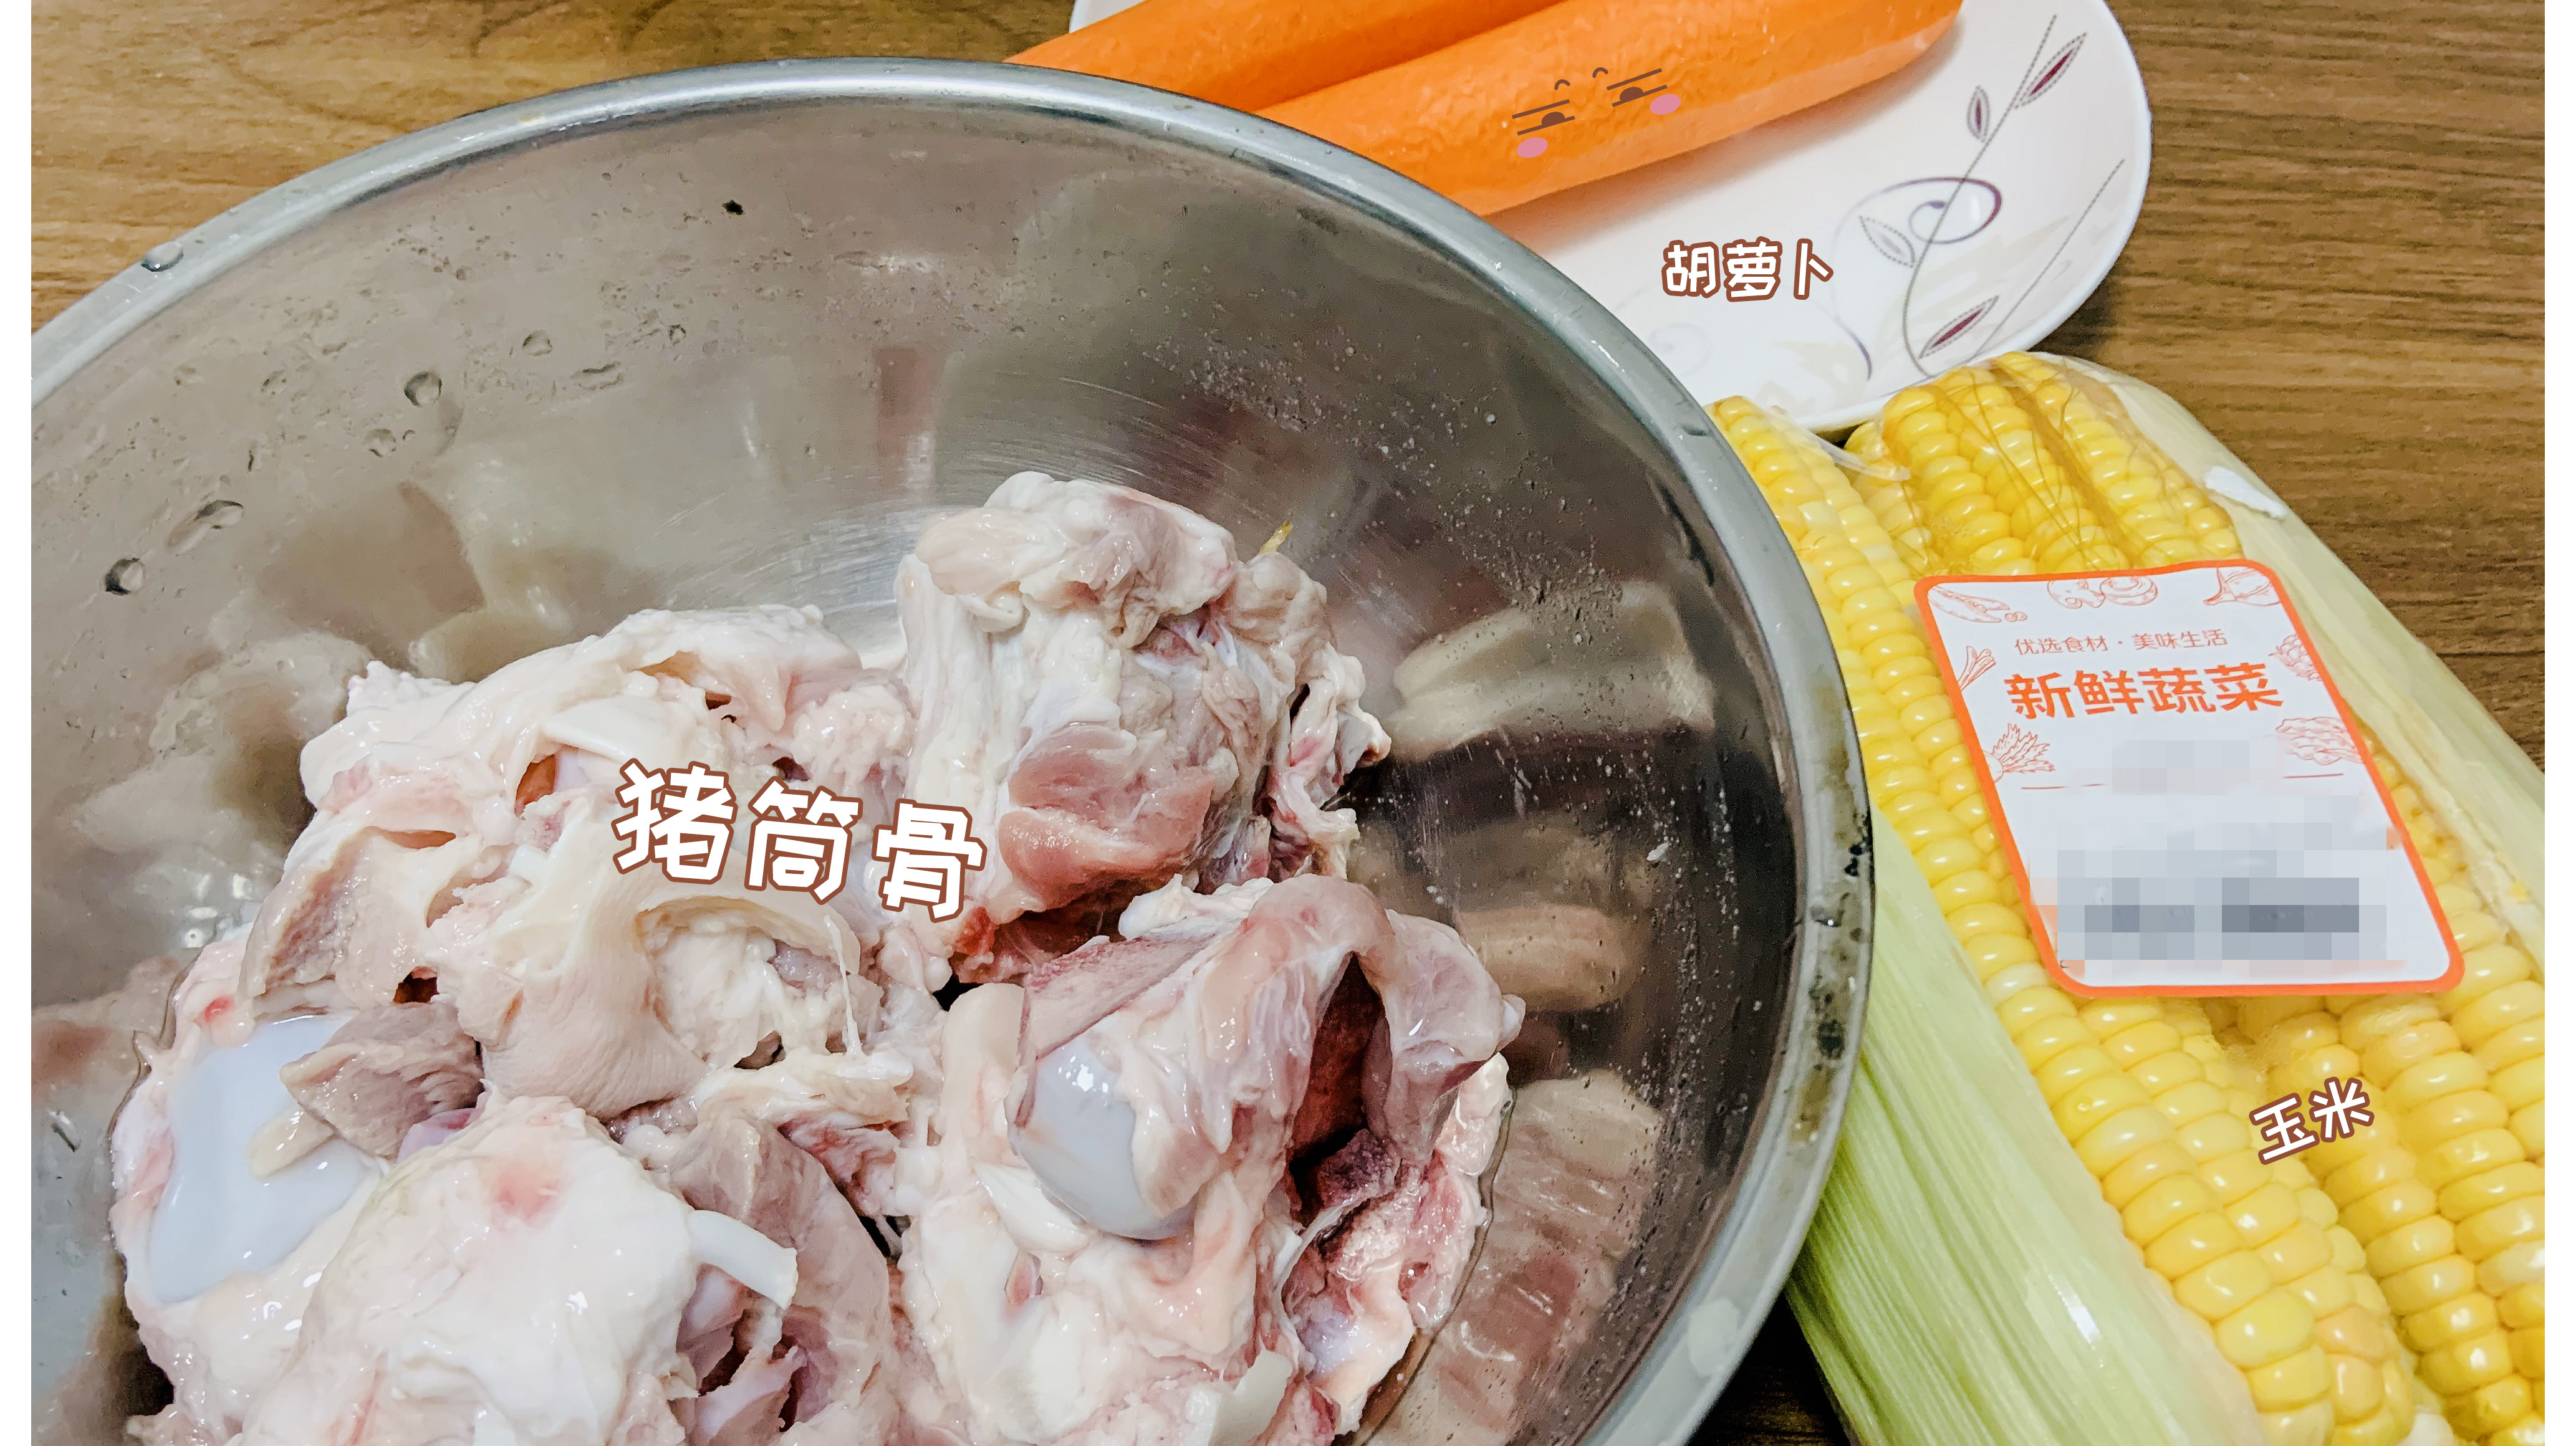 用料少的高压锅版玉米胡萝卜筒骨汤的做法